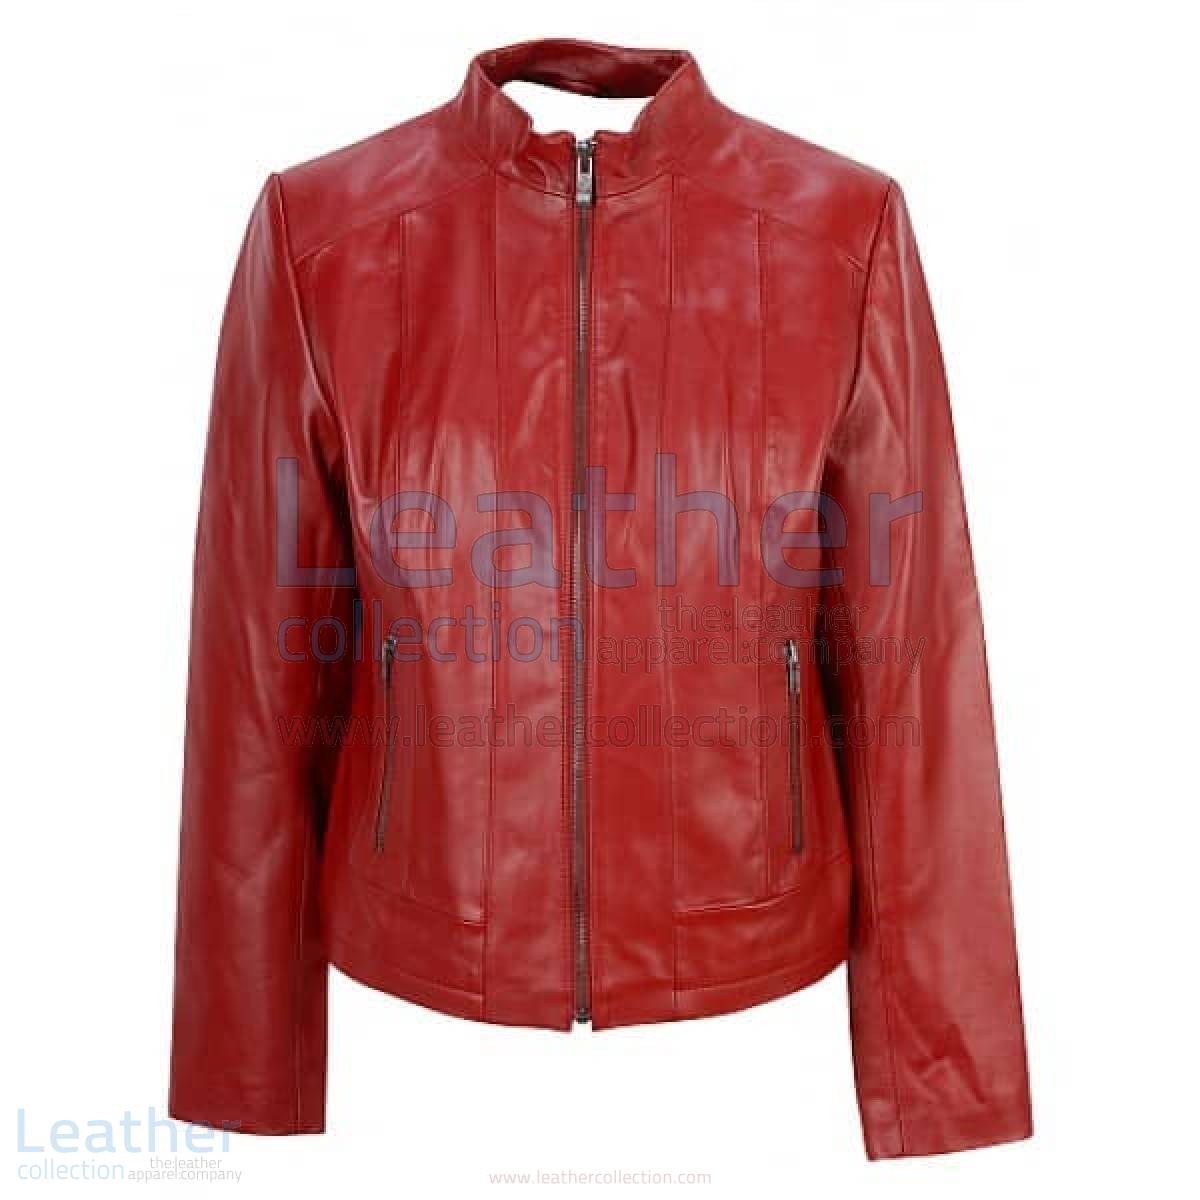 Red Fashion Jacket of Leather –  Jacket